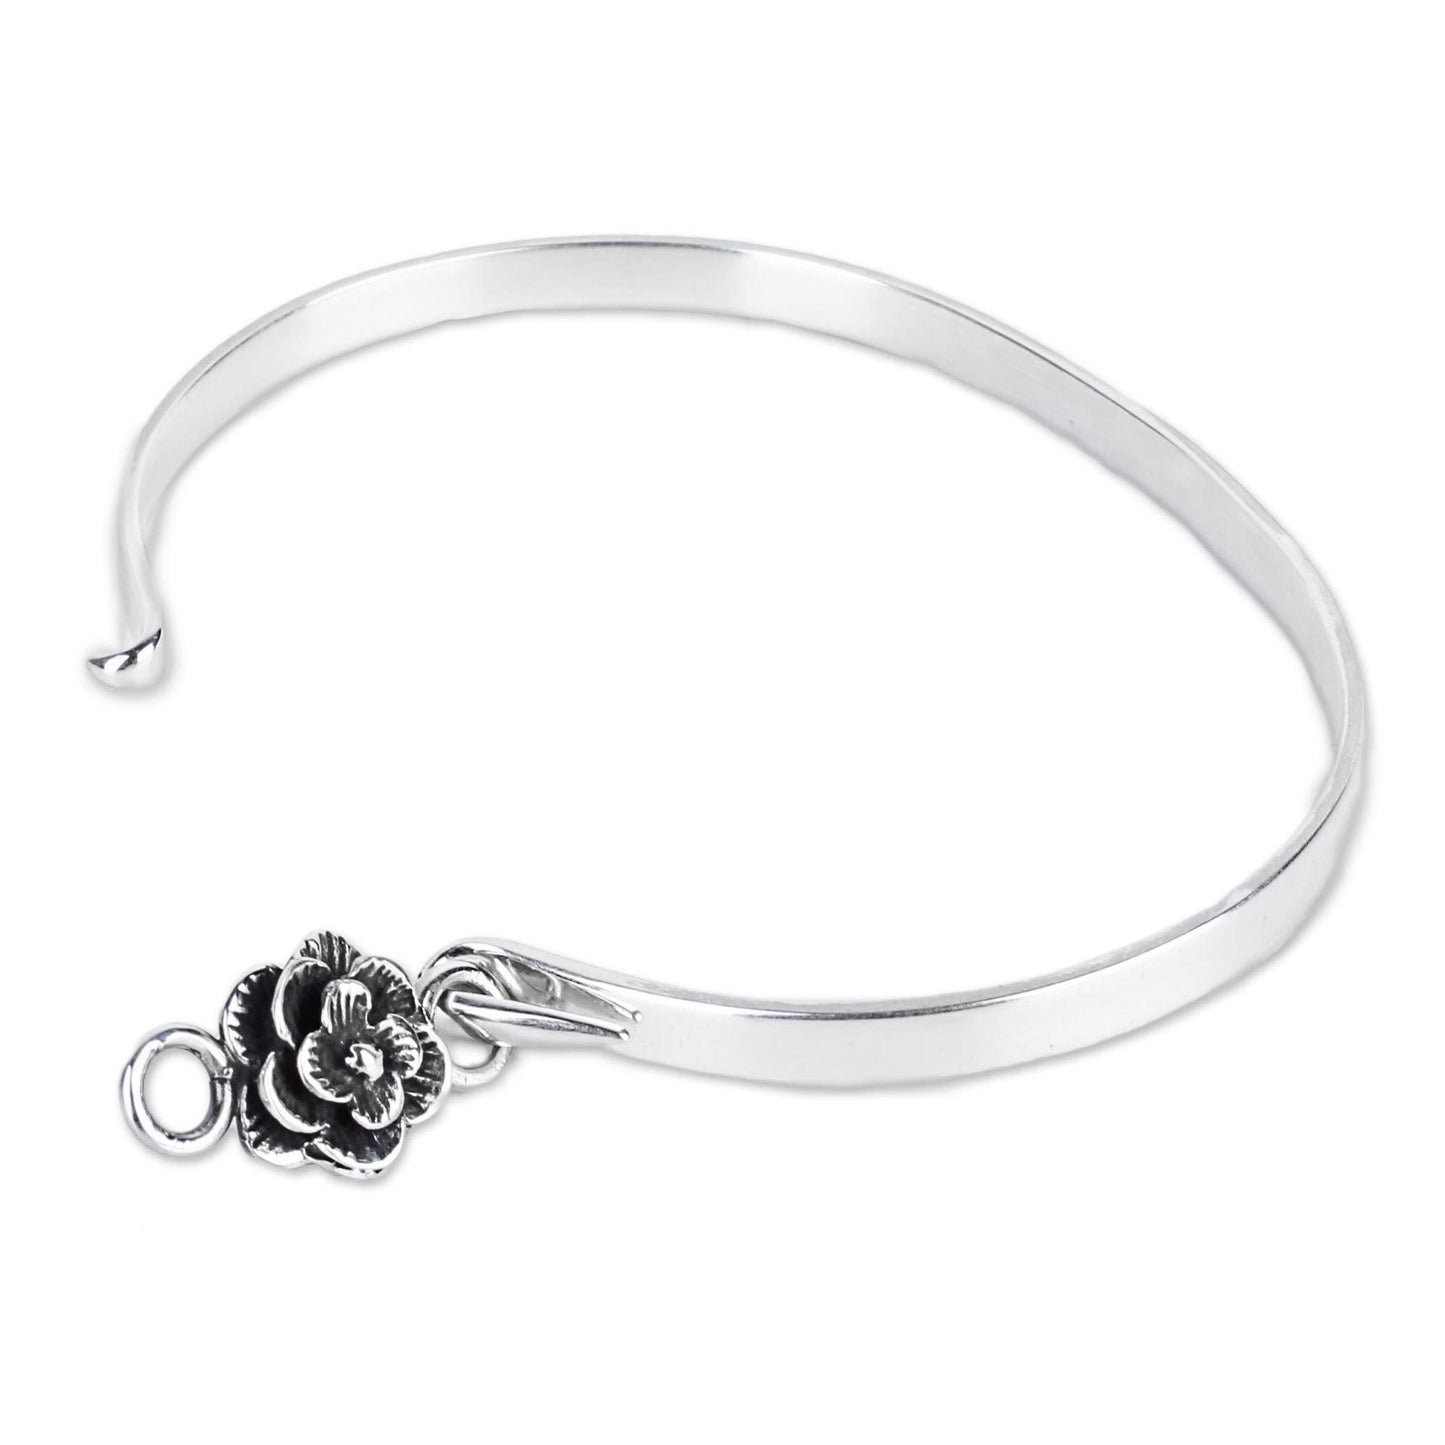 Rose Beauty Sterling Silver Bangle Bracelet